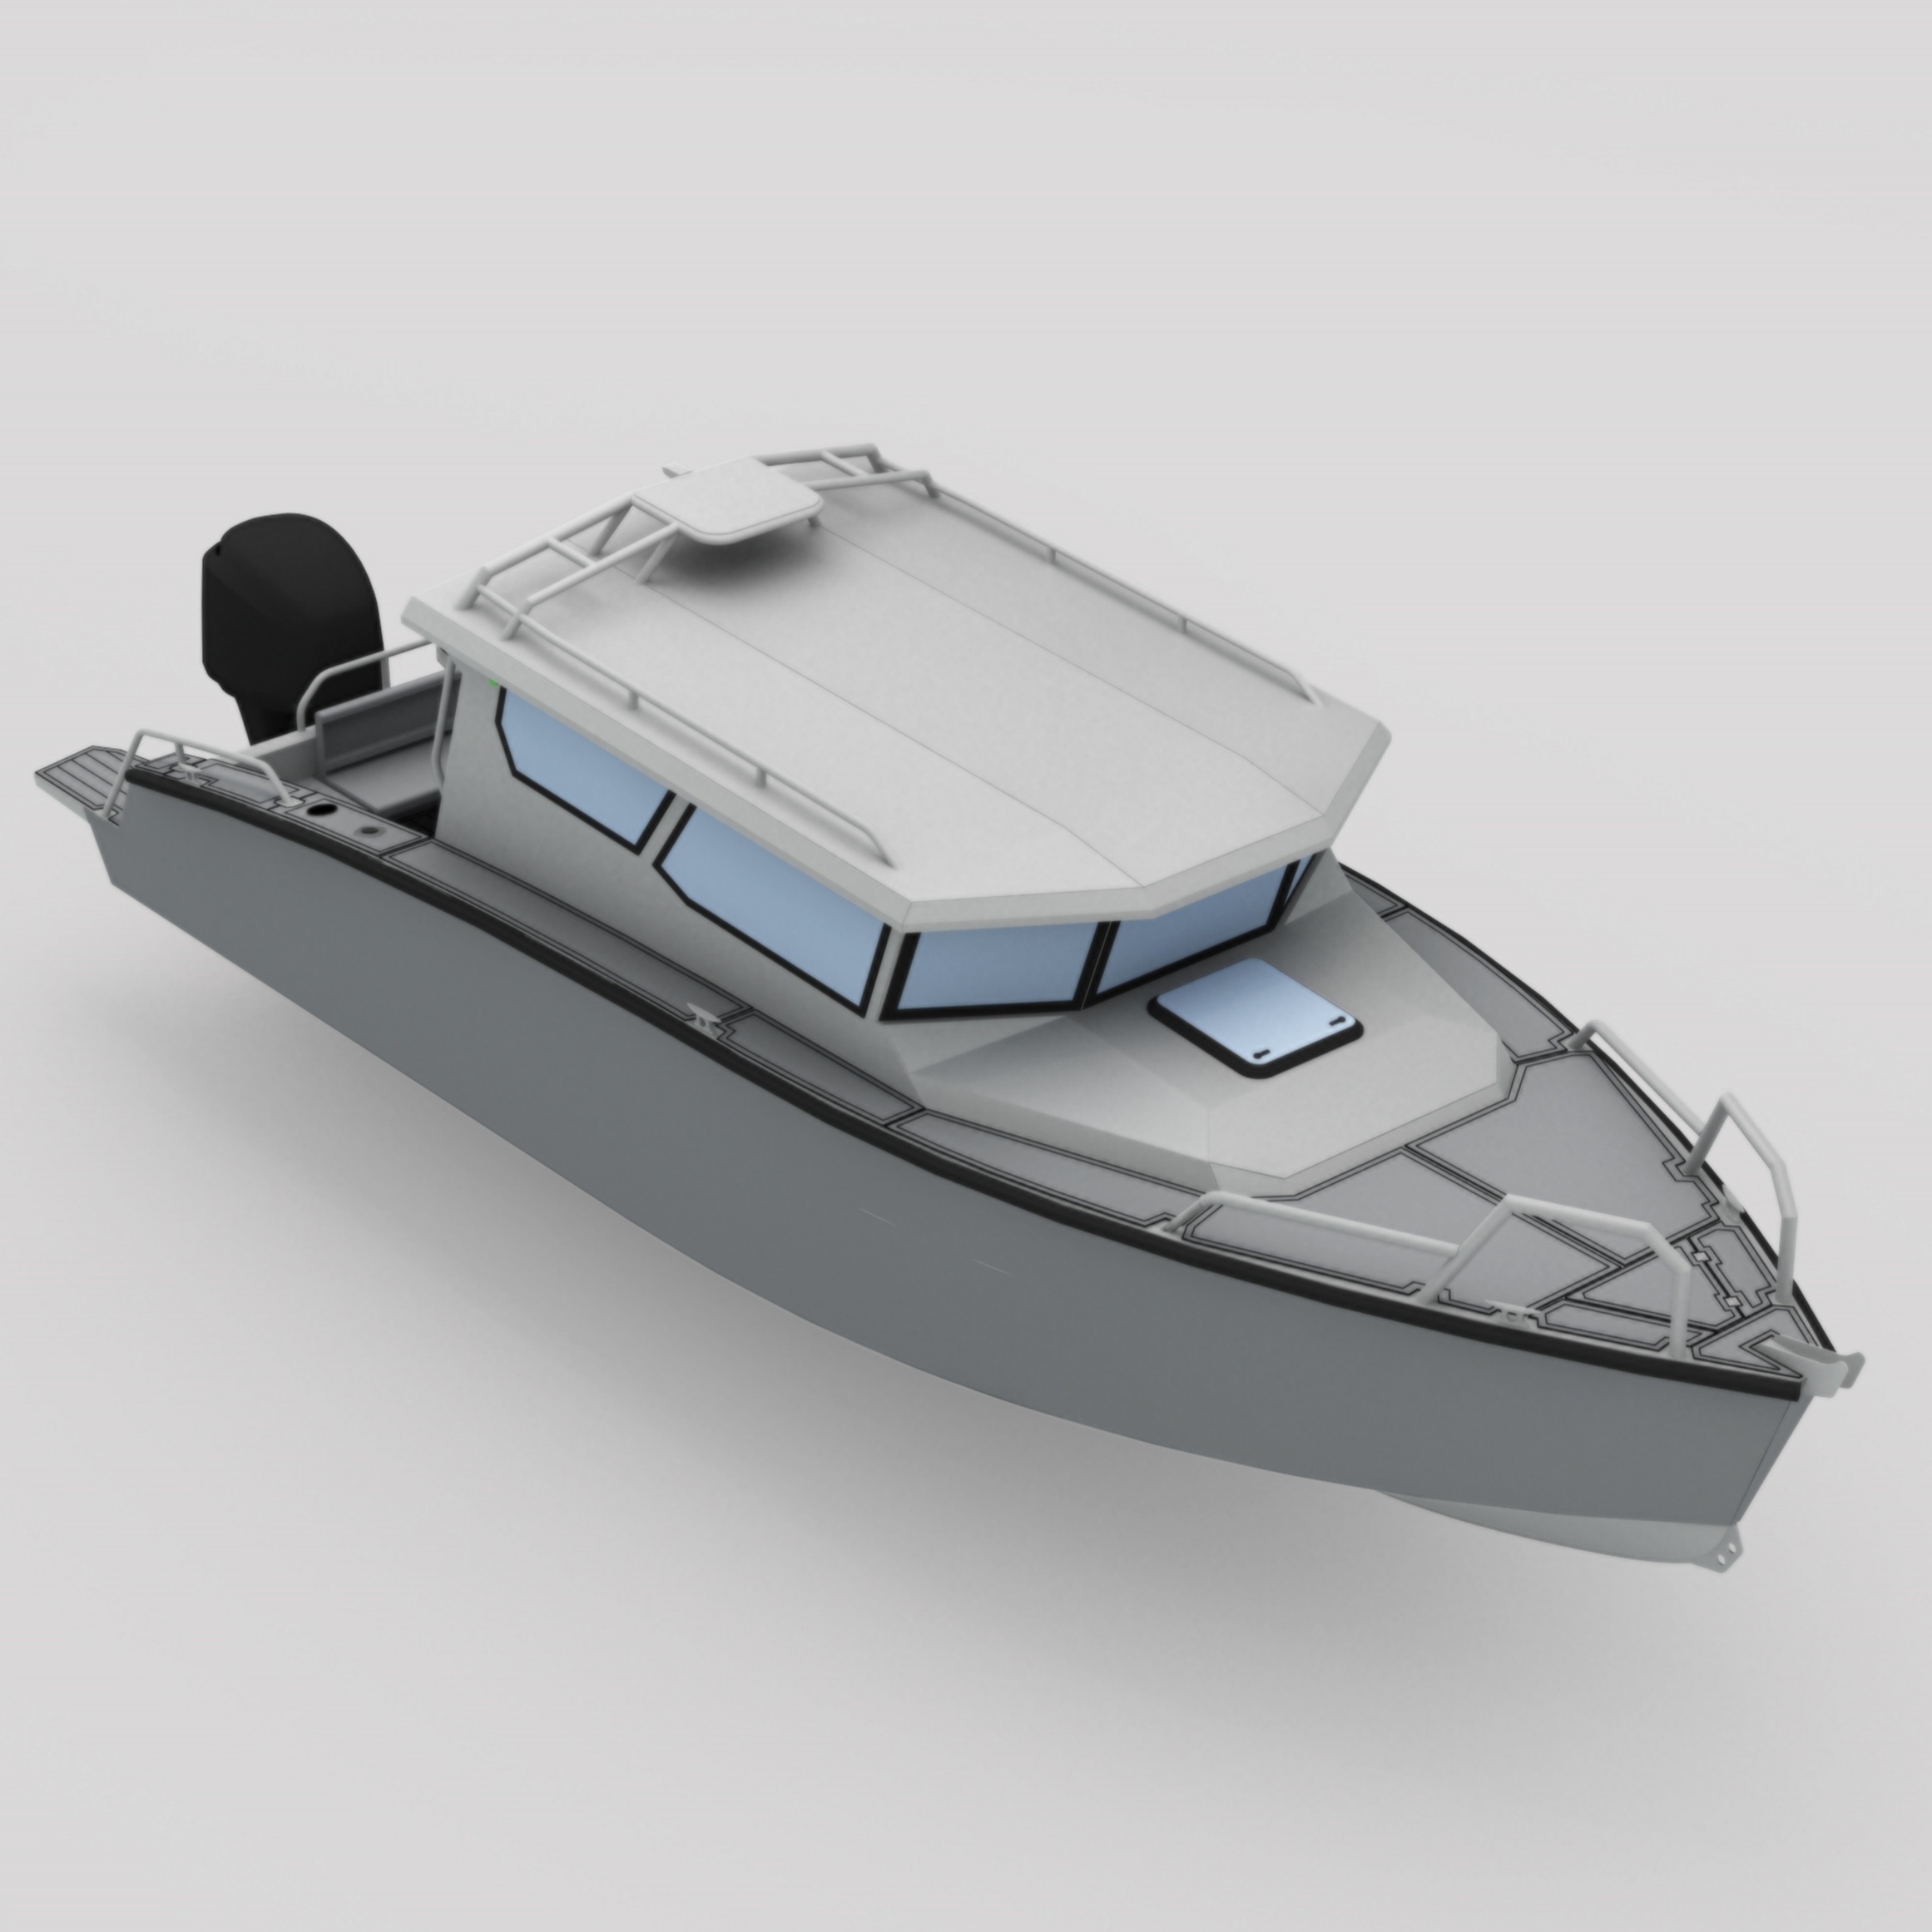 Алюмінієвий човен Bladecraft 8,4 м для рибальських спортивних патрулів